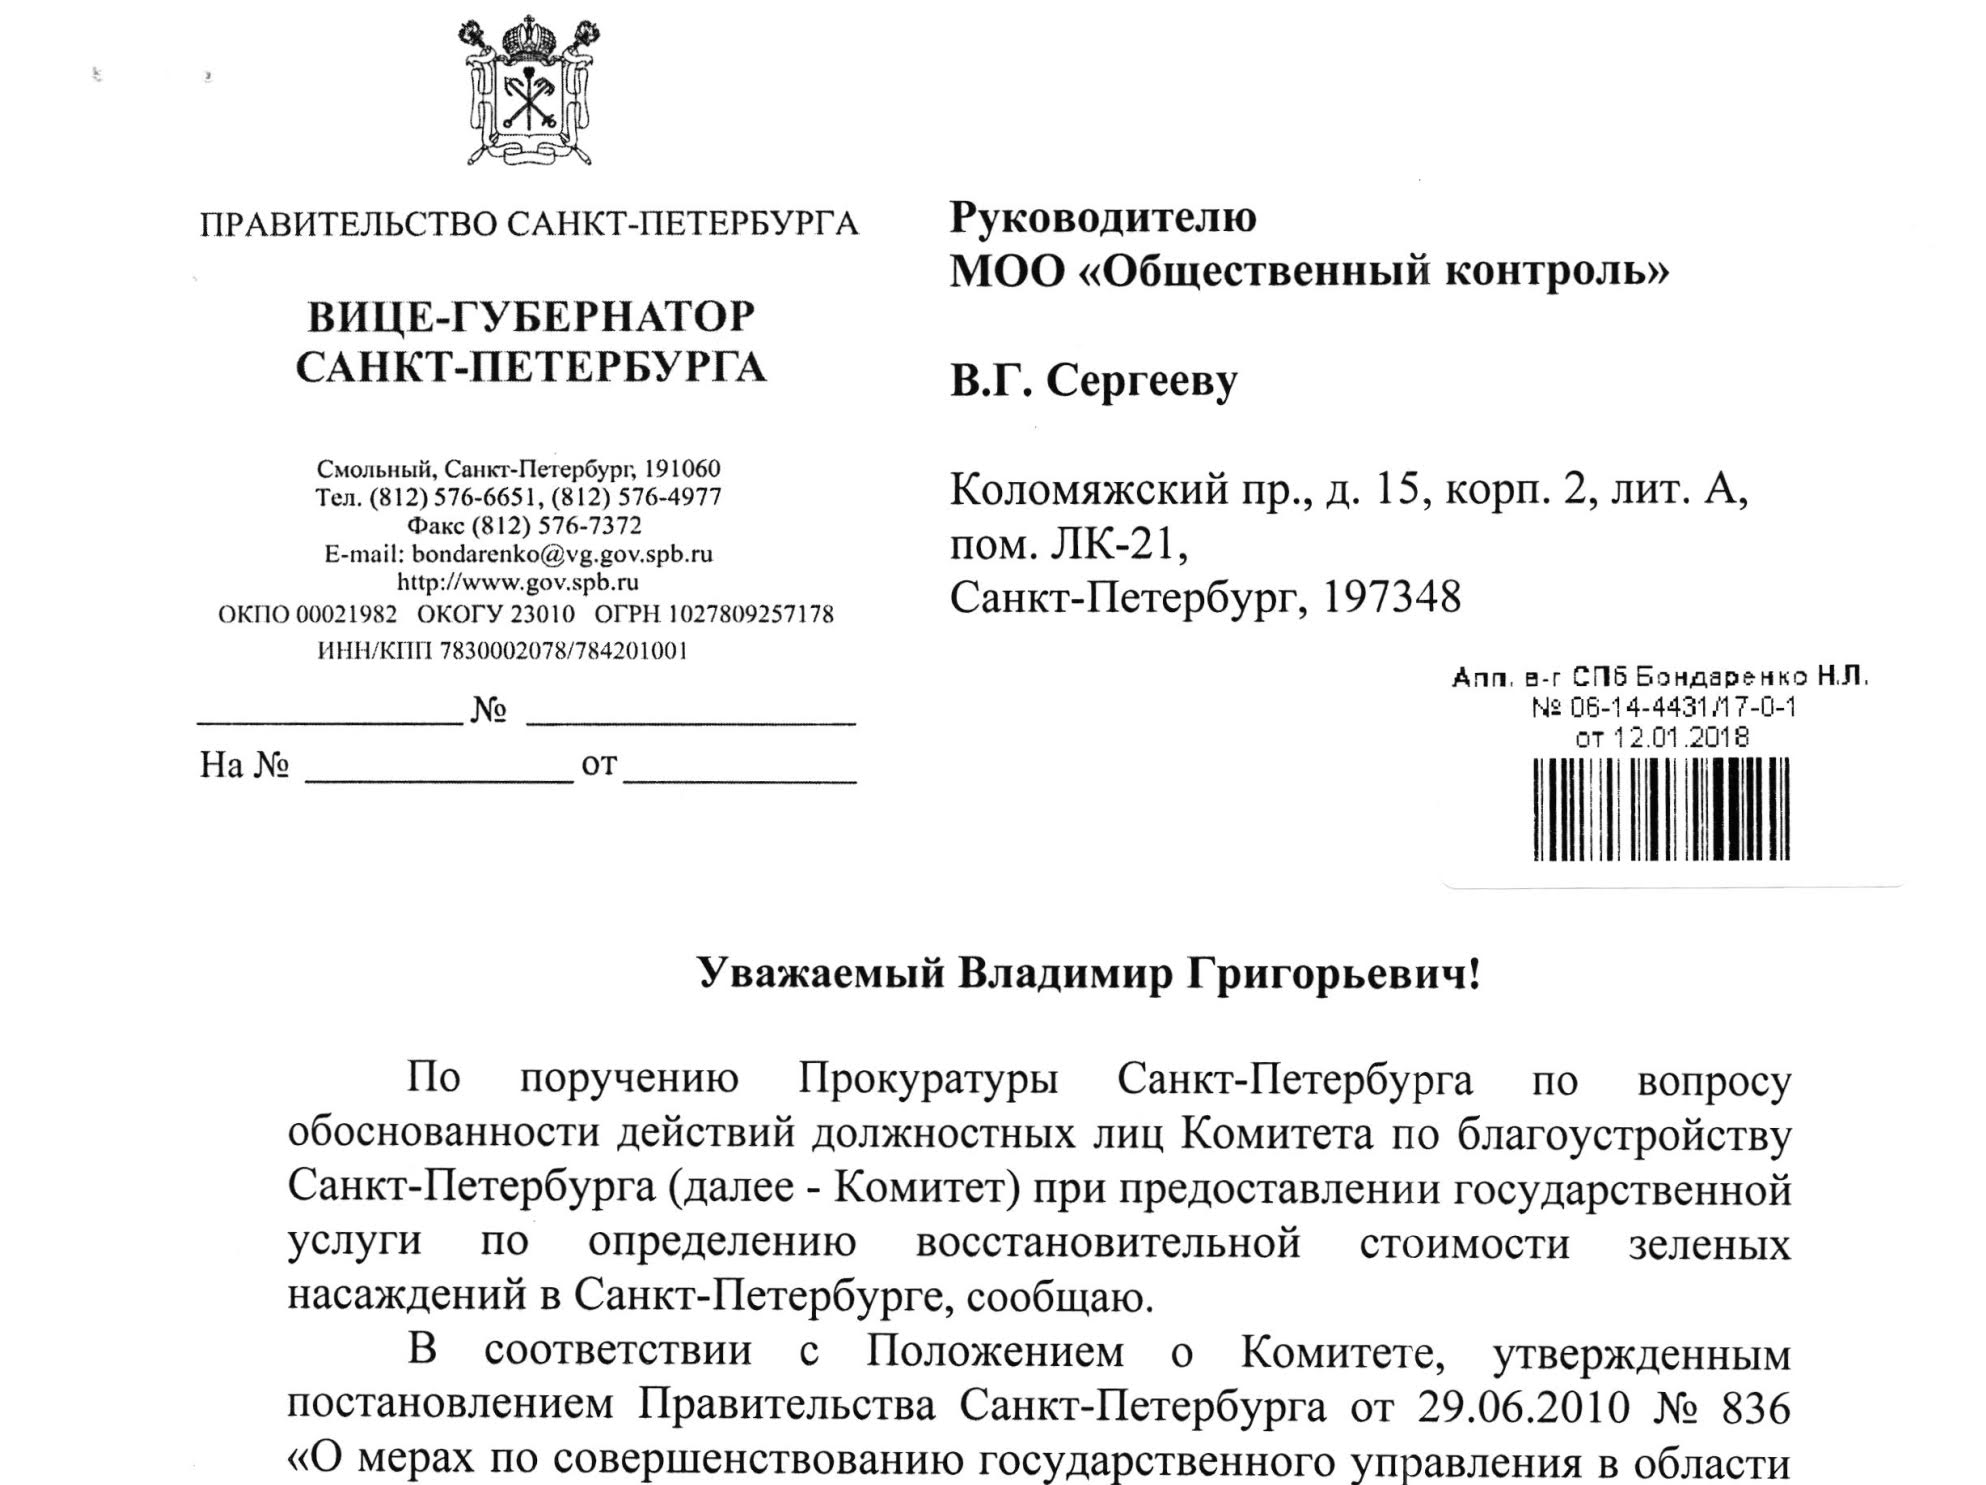 Ответ вице-губернатора Бондаренко на жалобу в Прокуратуру Санкт-Петербурга по вопросу незаконности действий должностных лиц Комитета по благоустройству СПб.